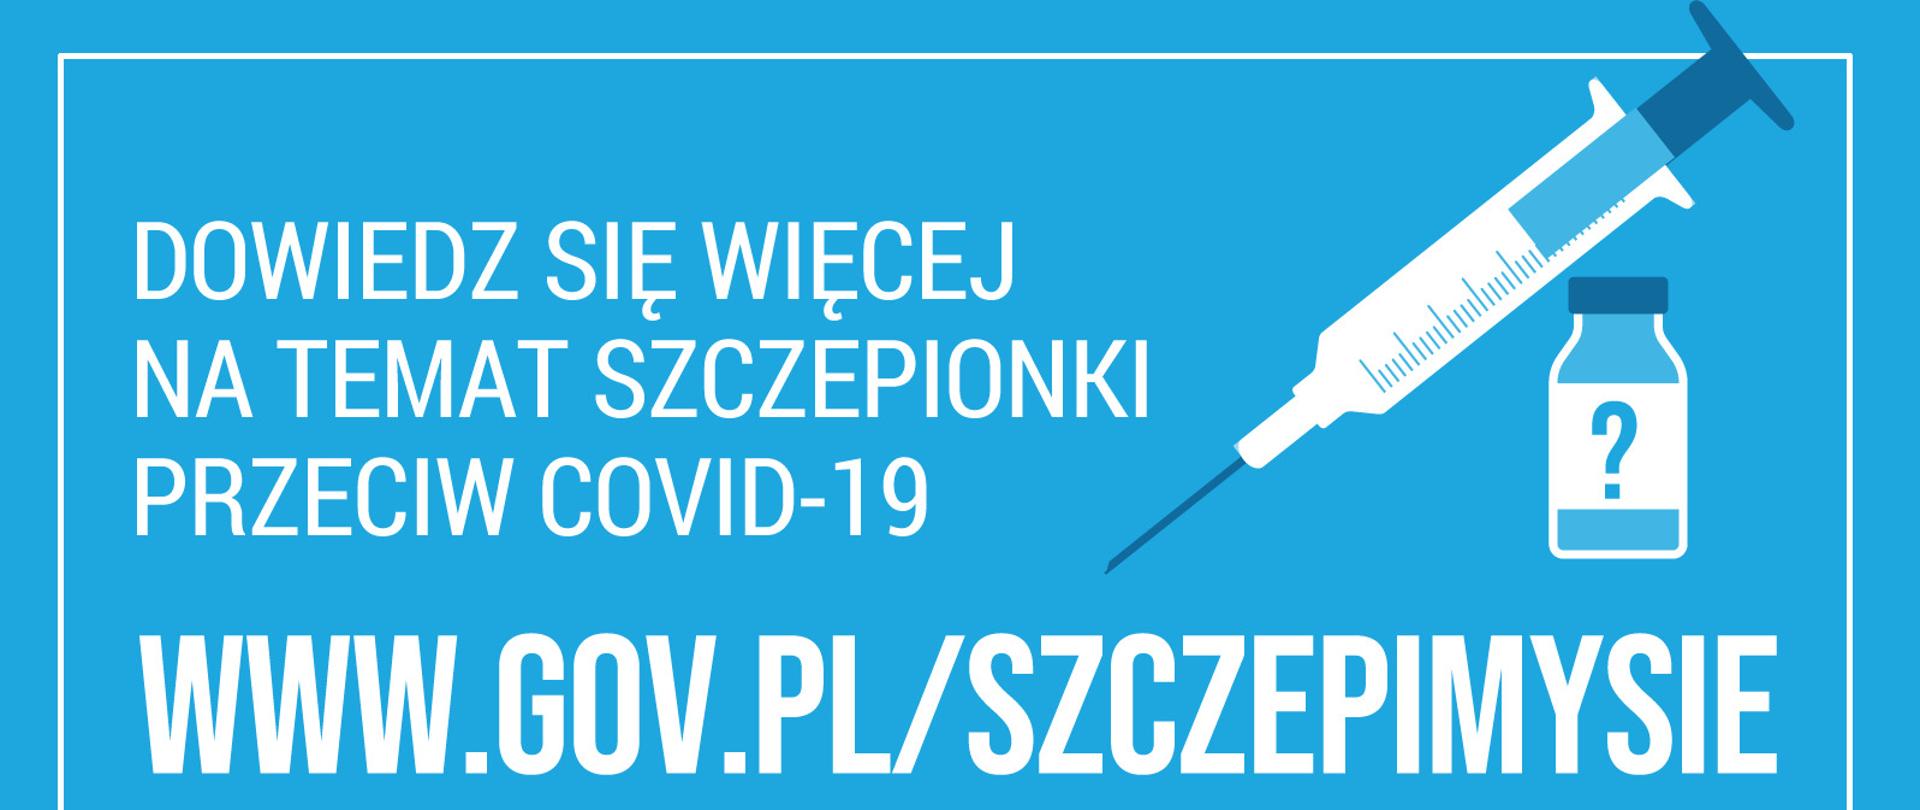 Grafika z białymi napisami "Dowiedz się więcej na temat szczepionki przeciw COVID-19" na niebieskim tle oraz boczną grafiką strzykawki.